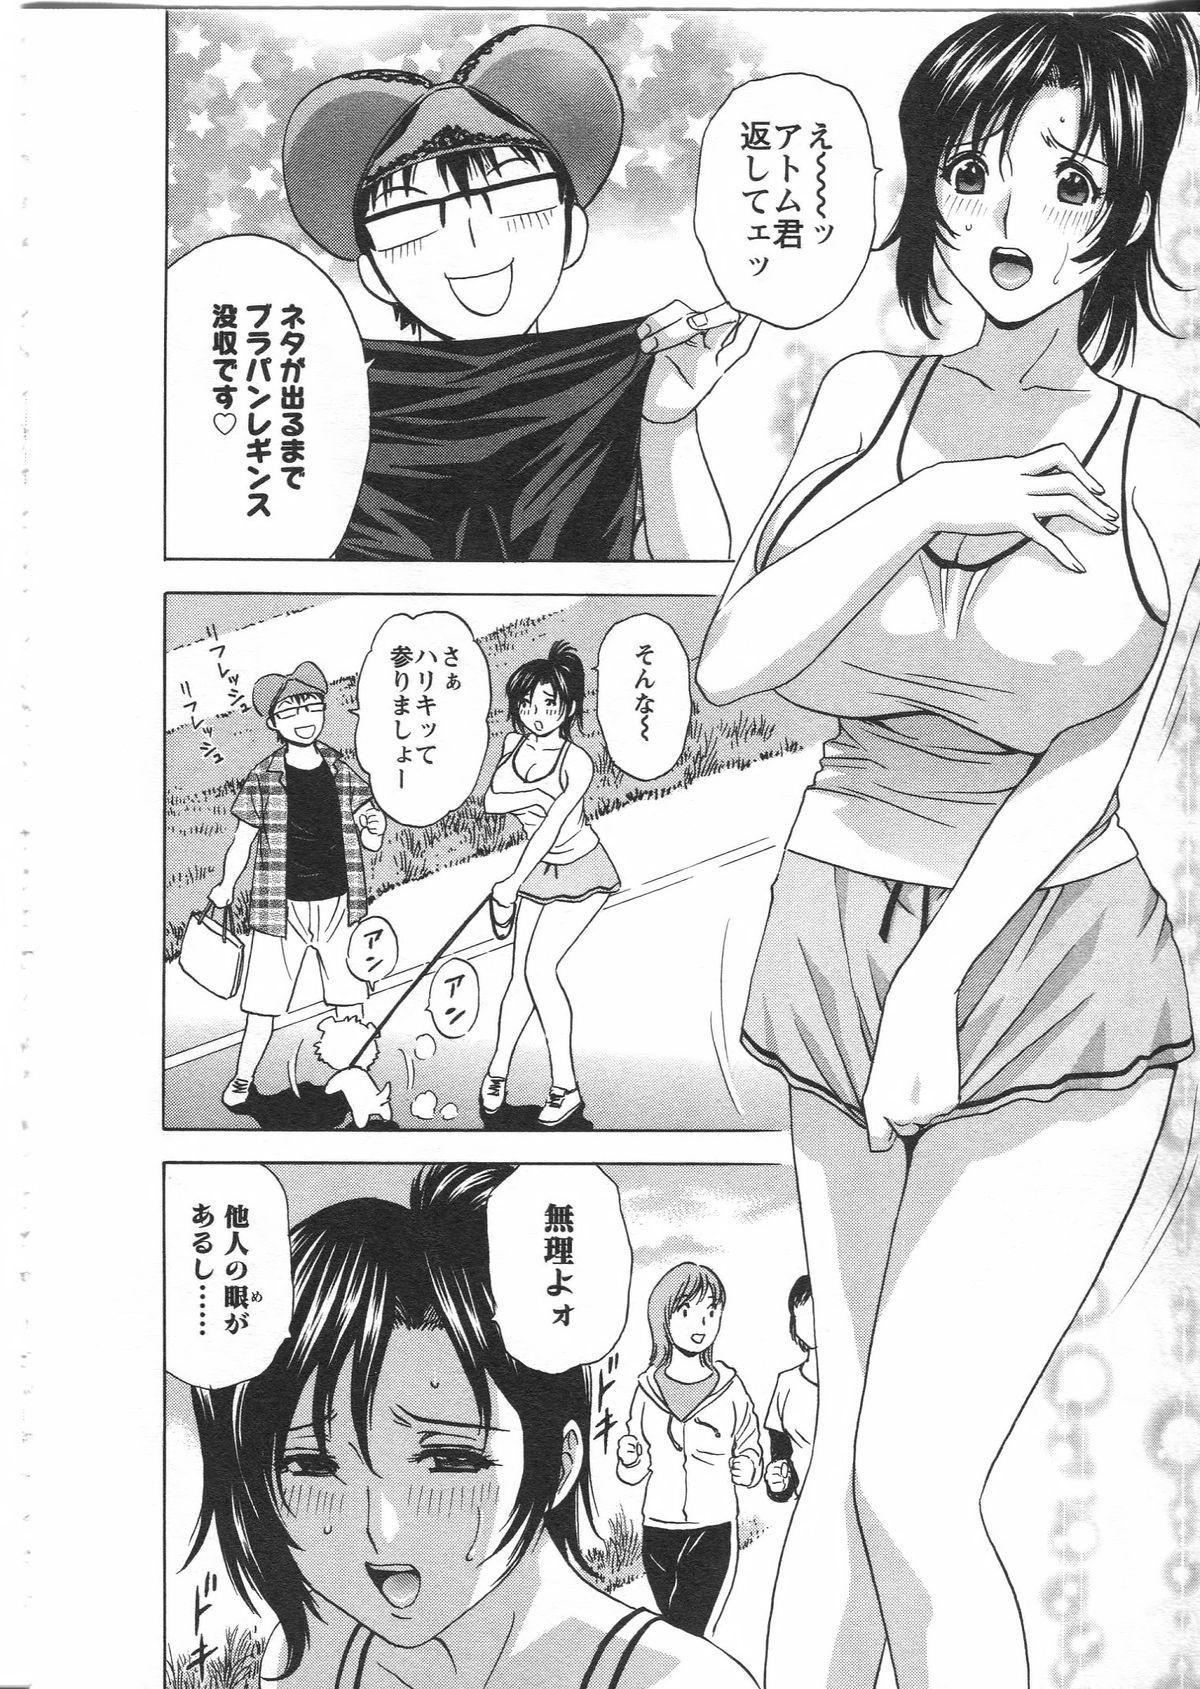 Manga no youna Hitozuma to no Hibi - Days with Married Women such as Comics. 139